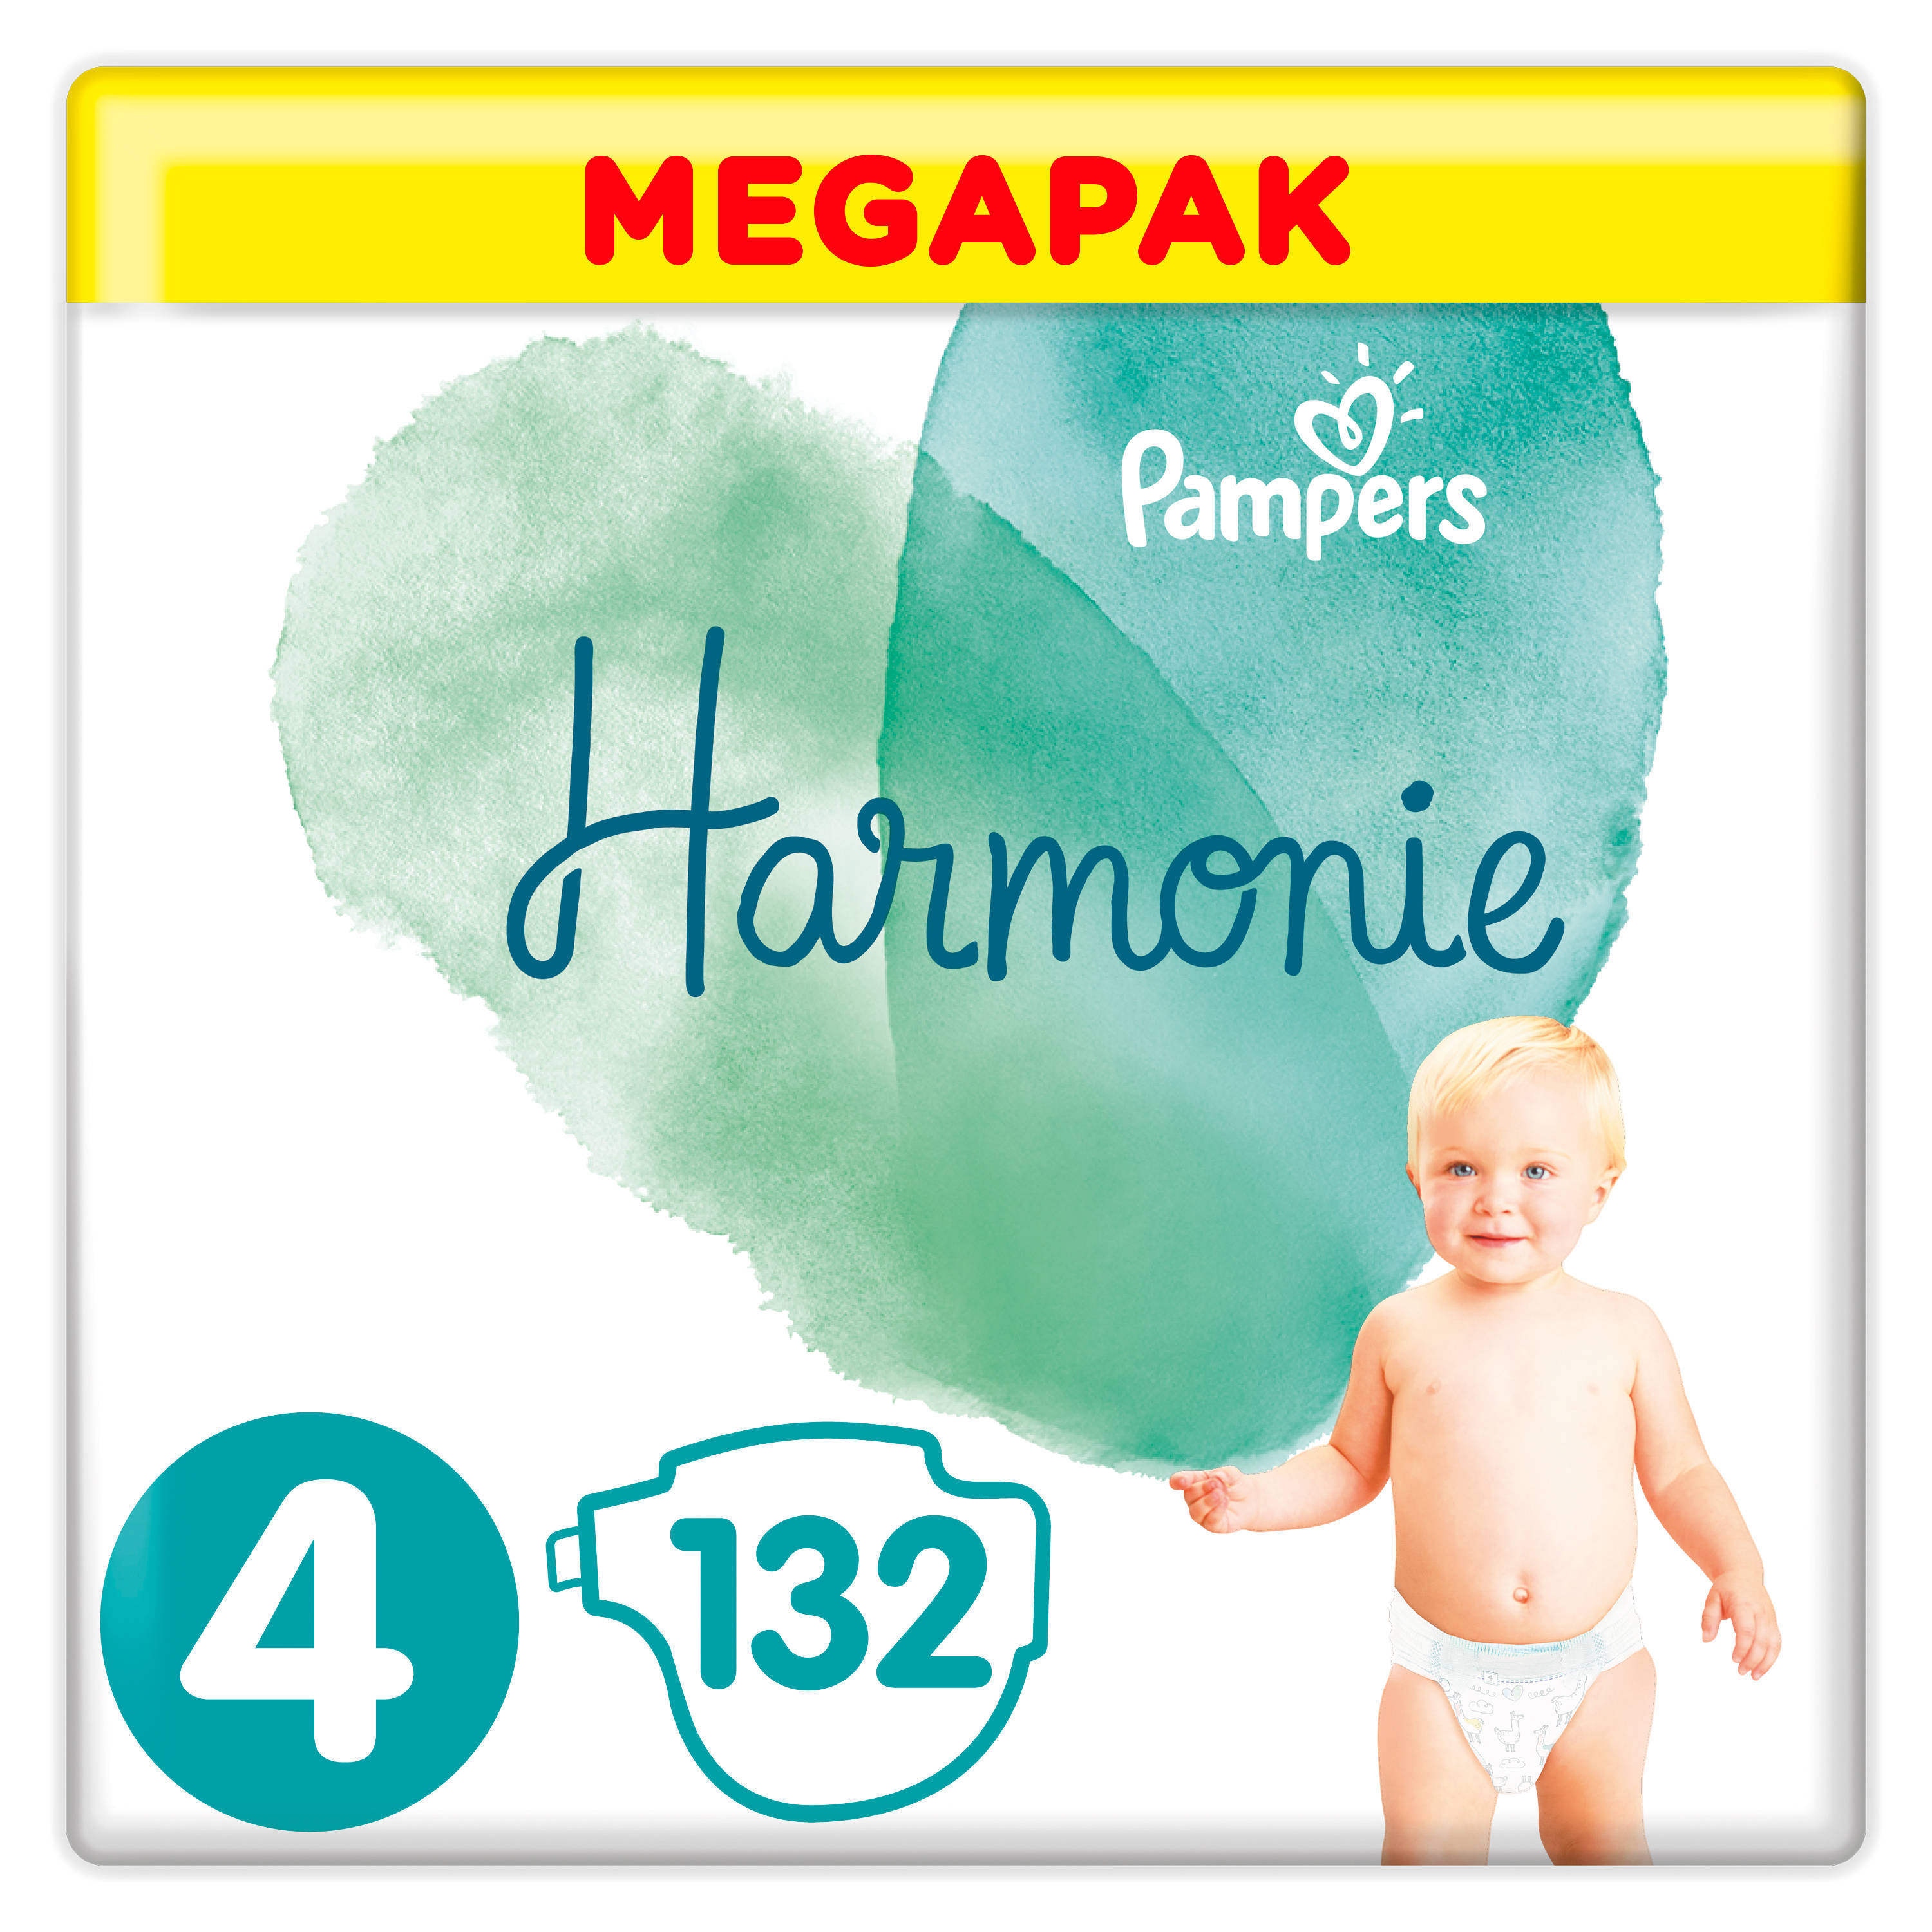 Pampers Harmonie Megapack Maat 4 (9-14kg) 132 luiers online kopen